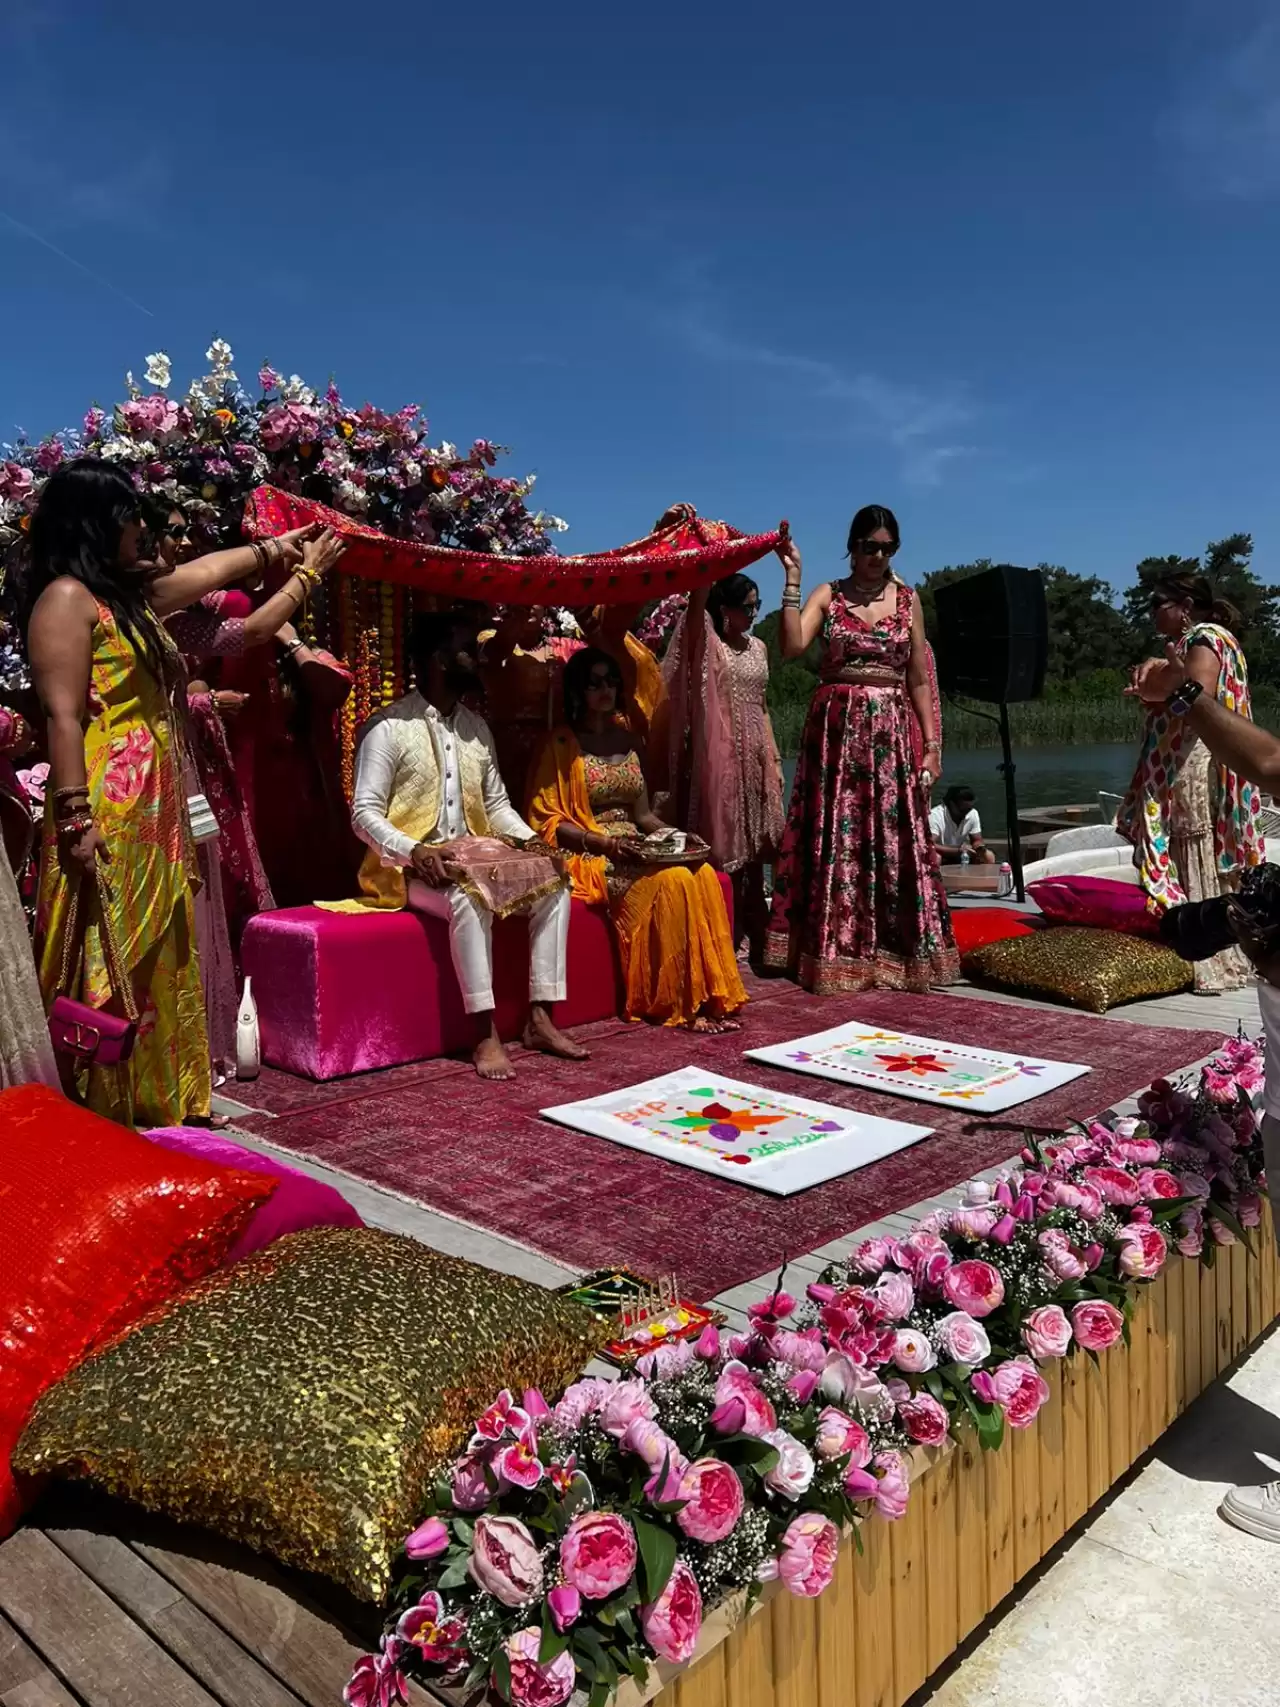 Birleşik Krallık'lı Tur Operatörü Caria Holidays, Antalya'da Unutulmaz Bir Hint Düğününe Ev Sahipliği Yaptı